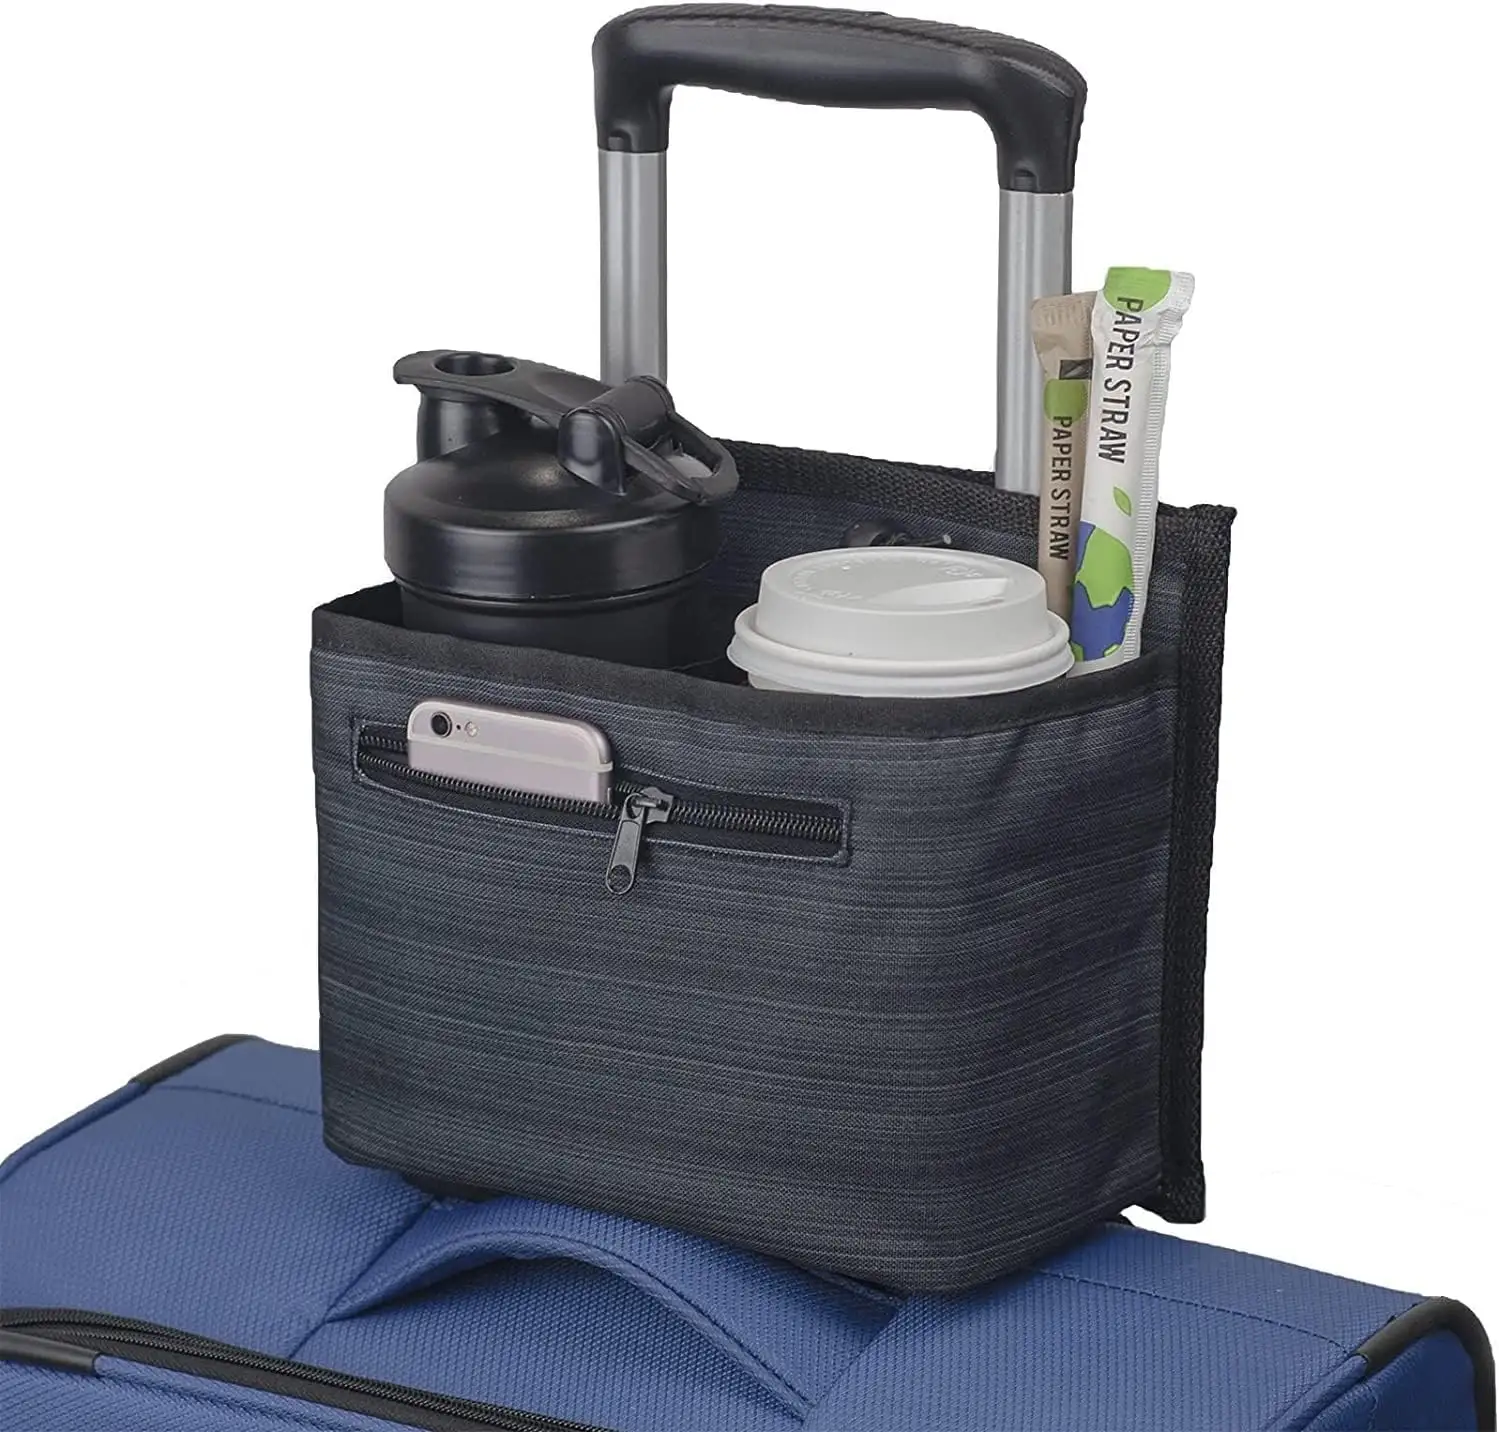 सुविधाजनक यात्रा साथी सूटकेस पेय वाहक कैडी यात्री हाथ मुक्त 2 पैक सामान यात्रा कप धारक